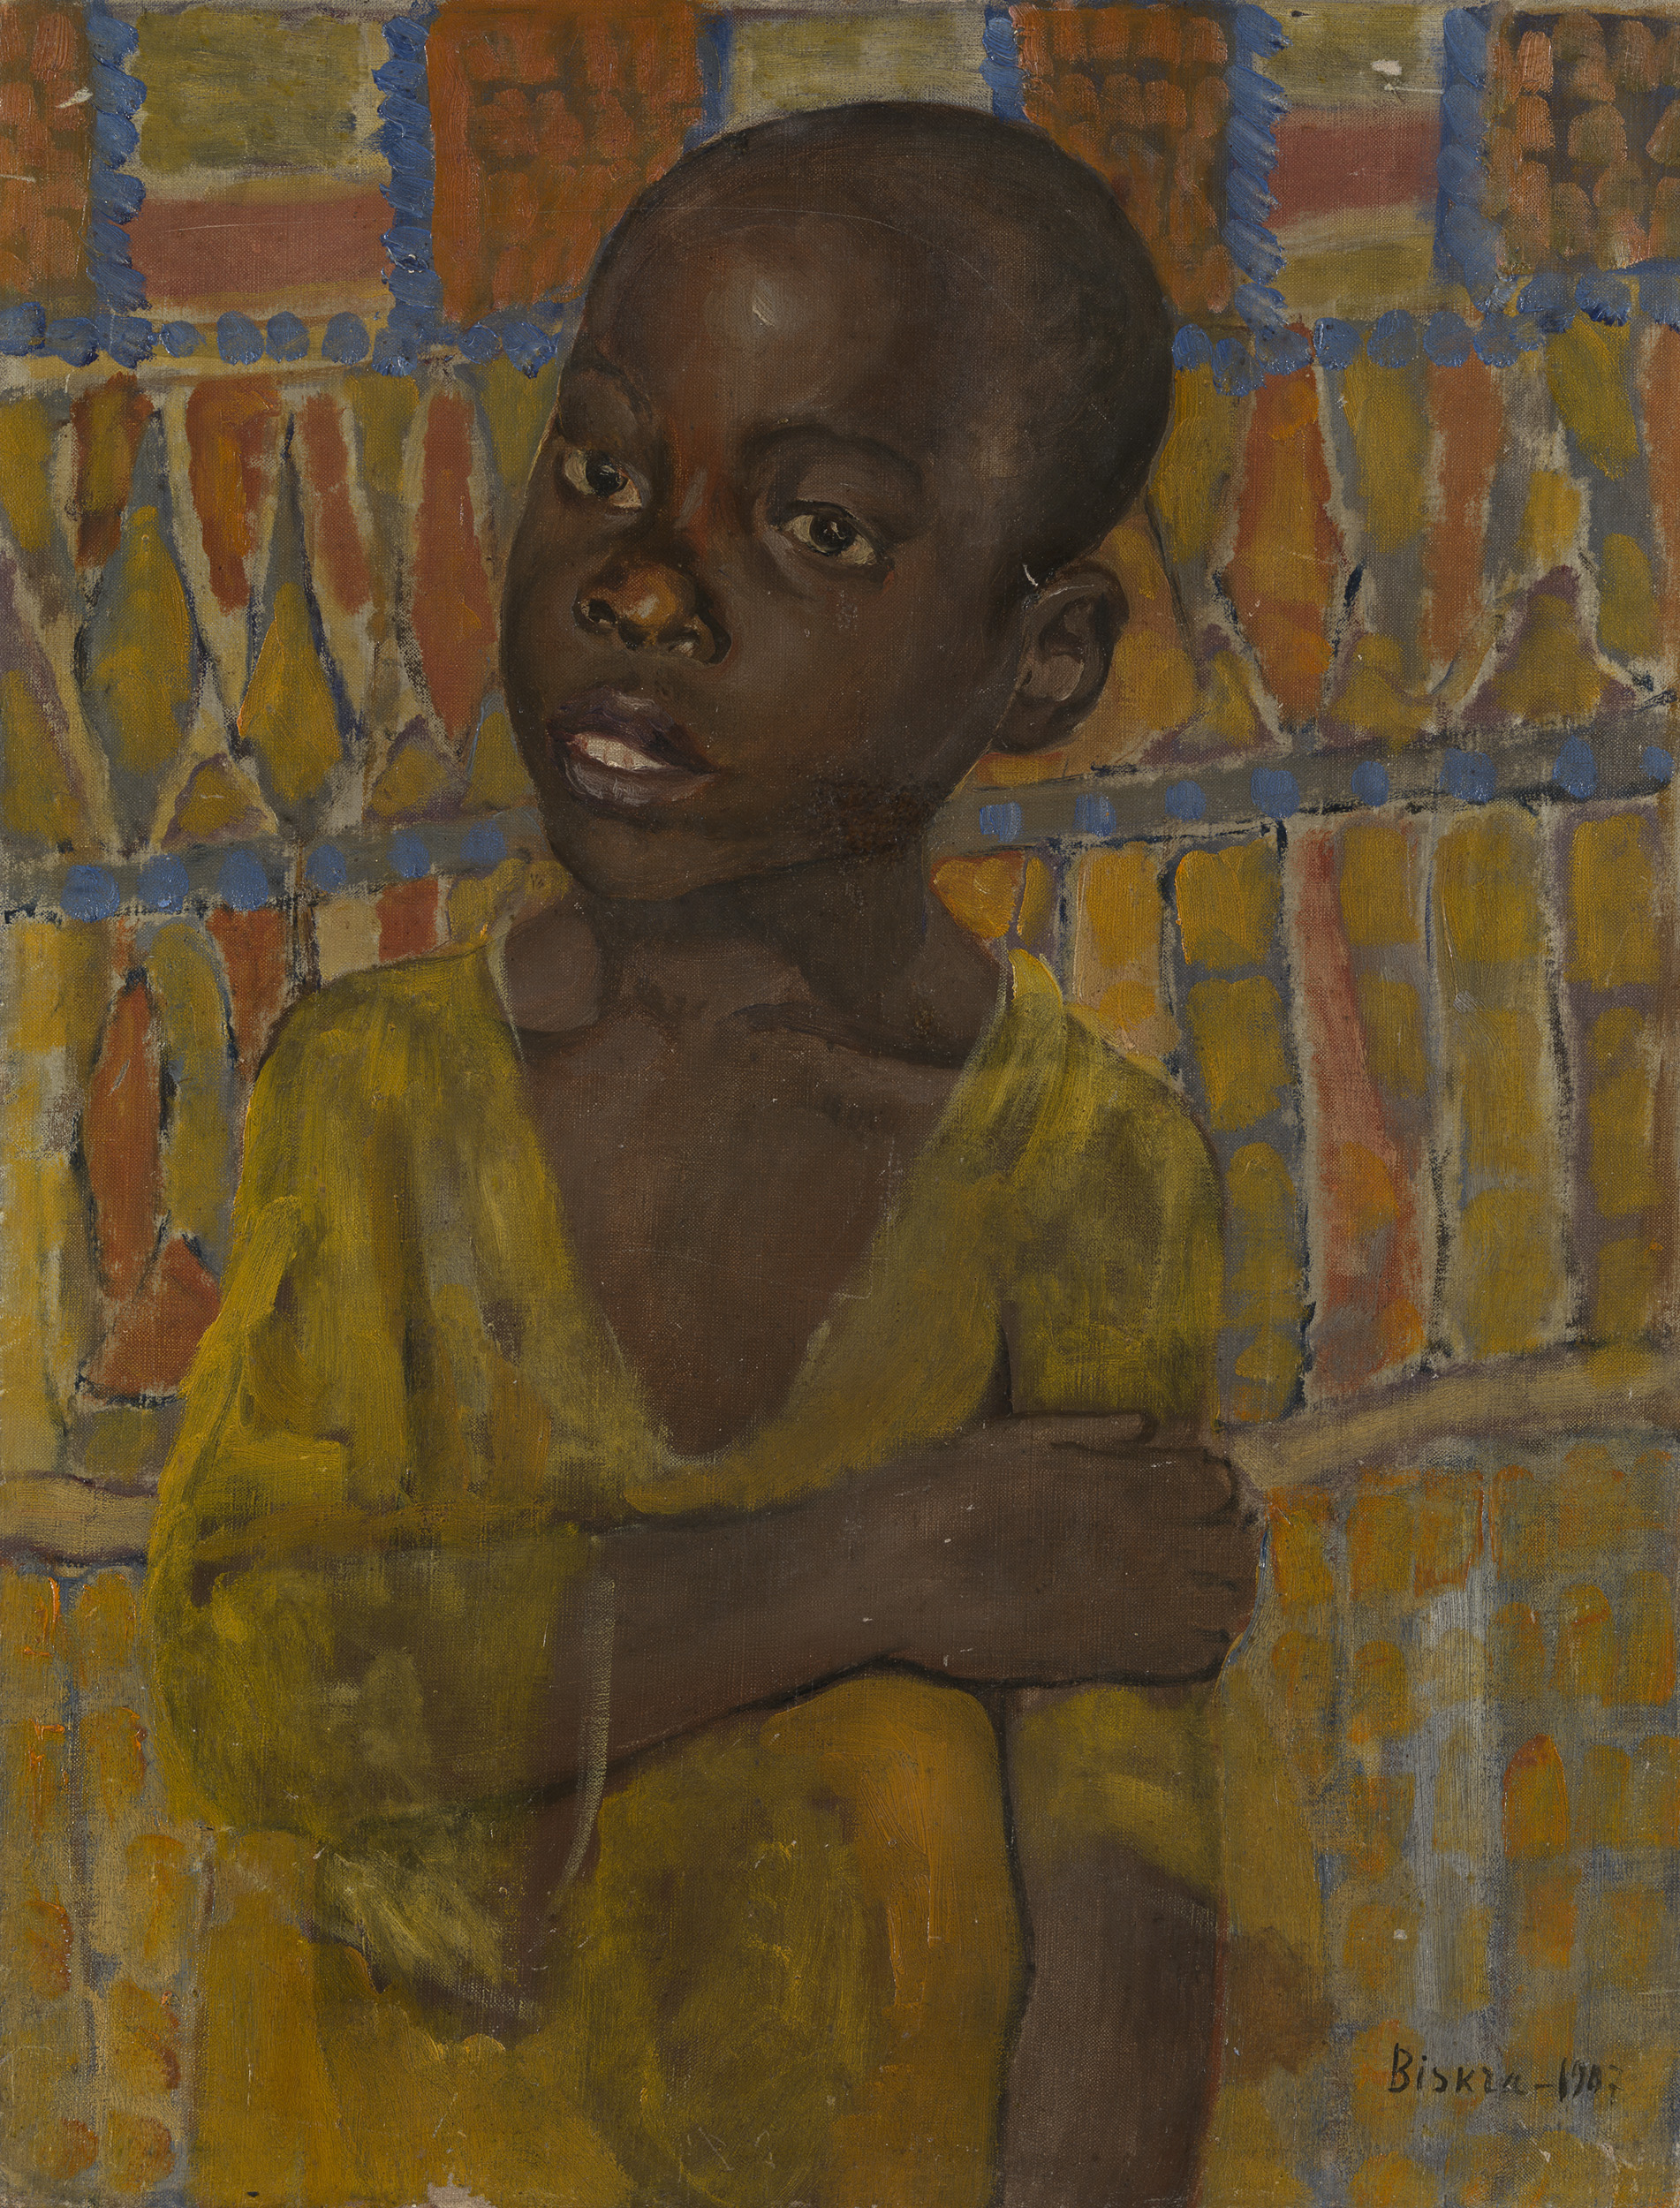 Lot 28 Kuzma Petrov-Vodkin, Portrait of an African Boy